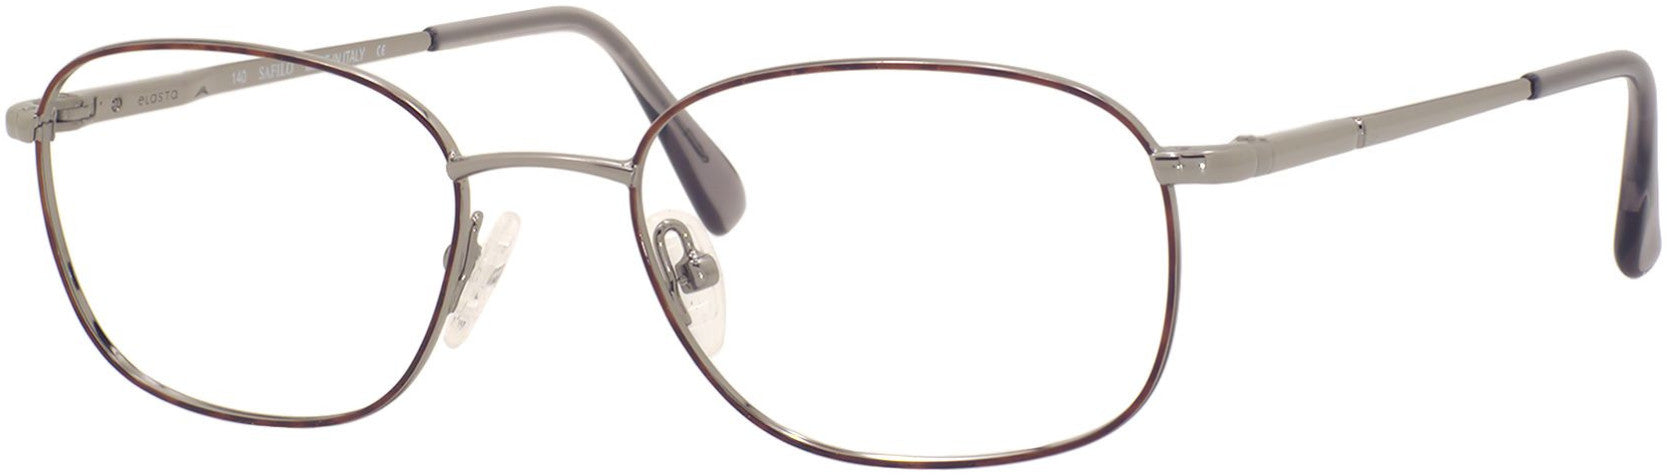  Elasta 7057 Rectangular Eyeglasses 0H20-0H20  Pewter Havana (00 Demo Lens)